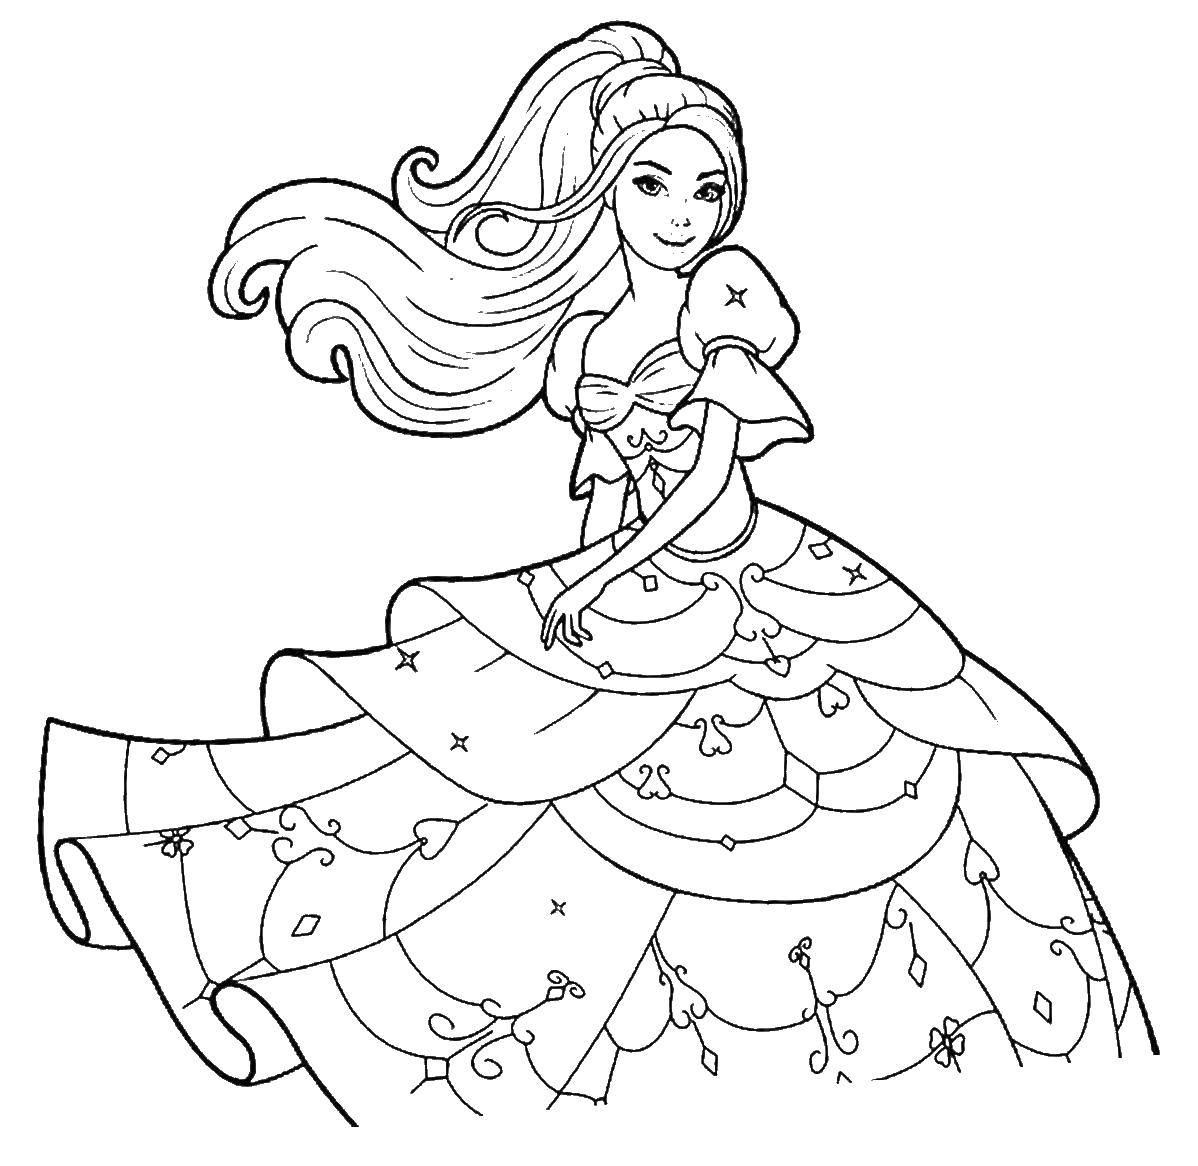 Название: Раскраска Барби принцесса. Категория: Барби. Теги: Барби, принцесса, принц.